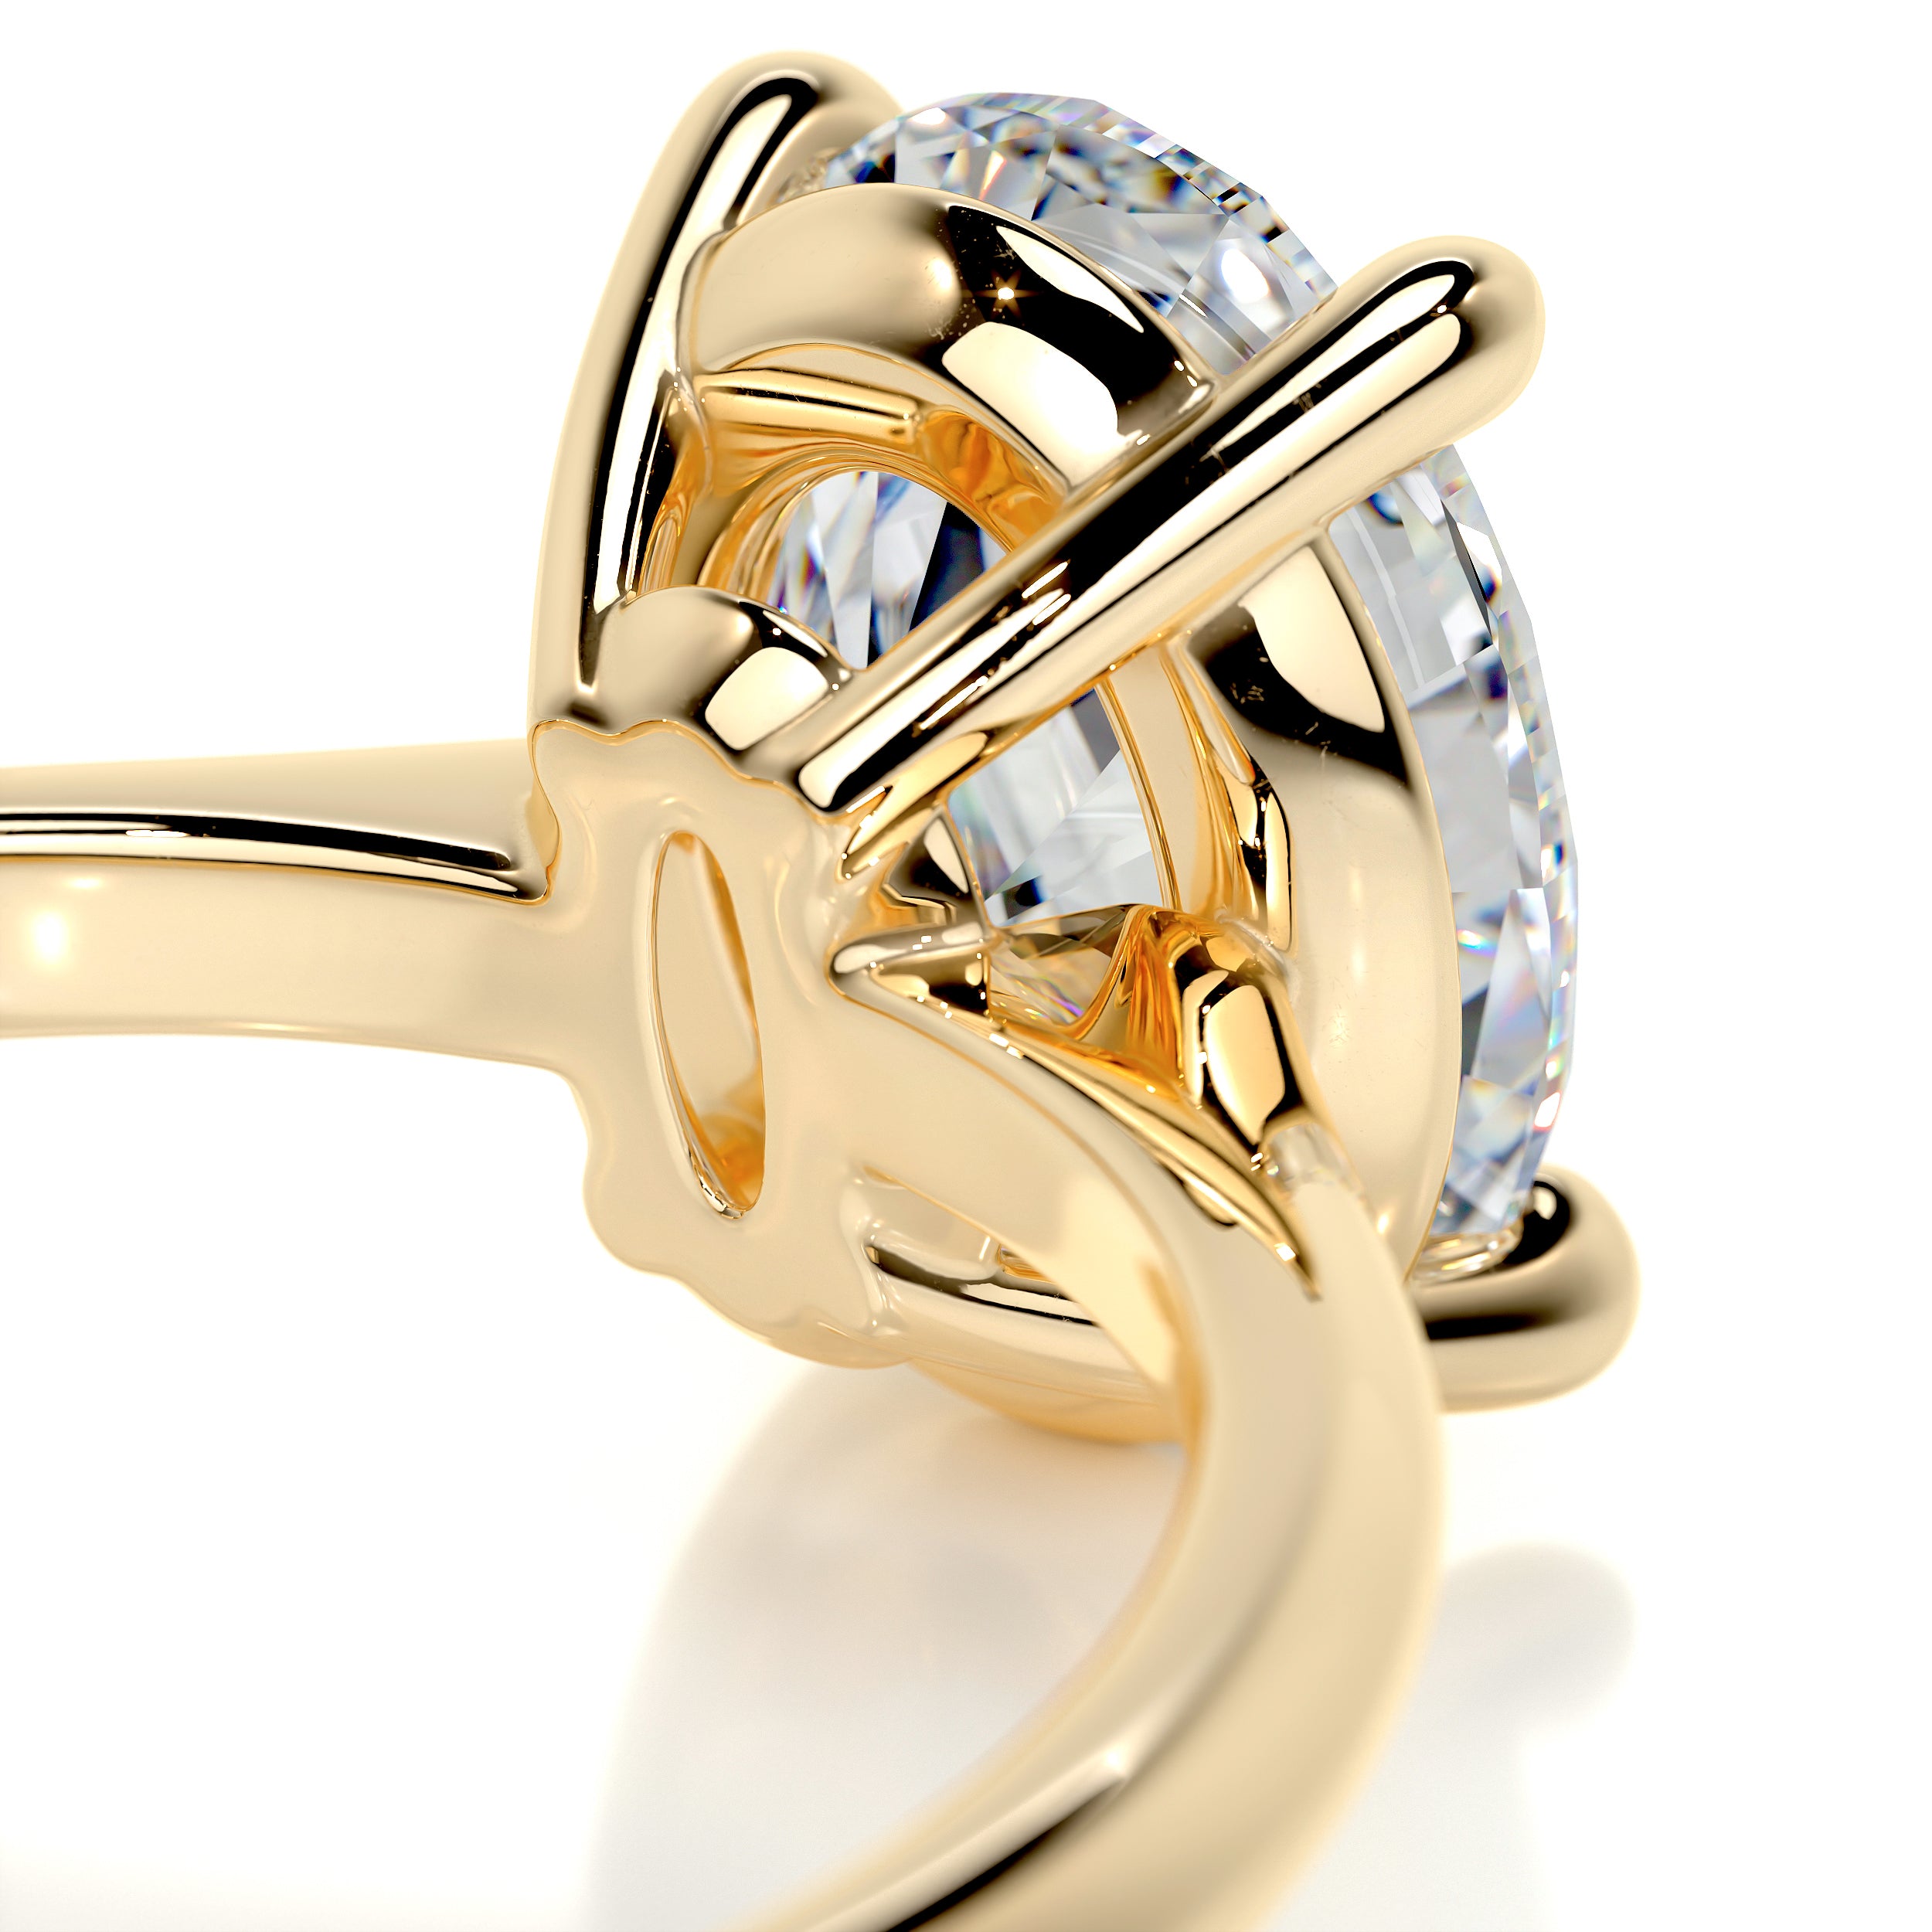 Julia Moissanite Ring   (2.15 Carat) -18K Yellow Gold